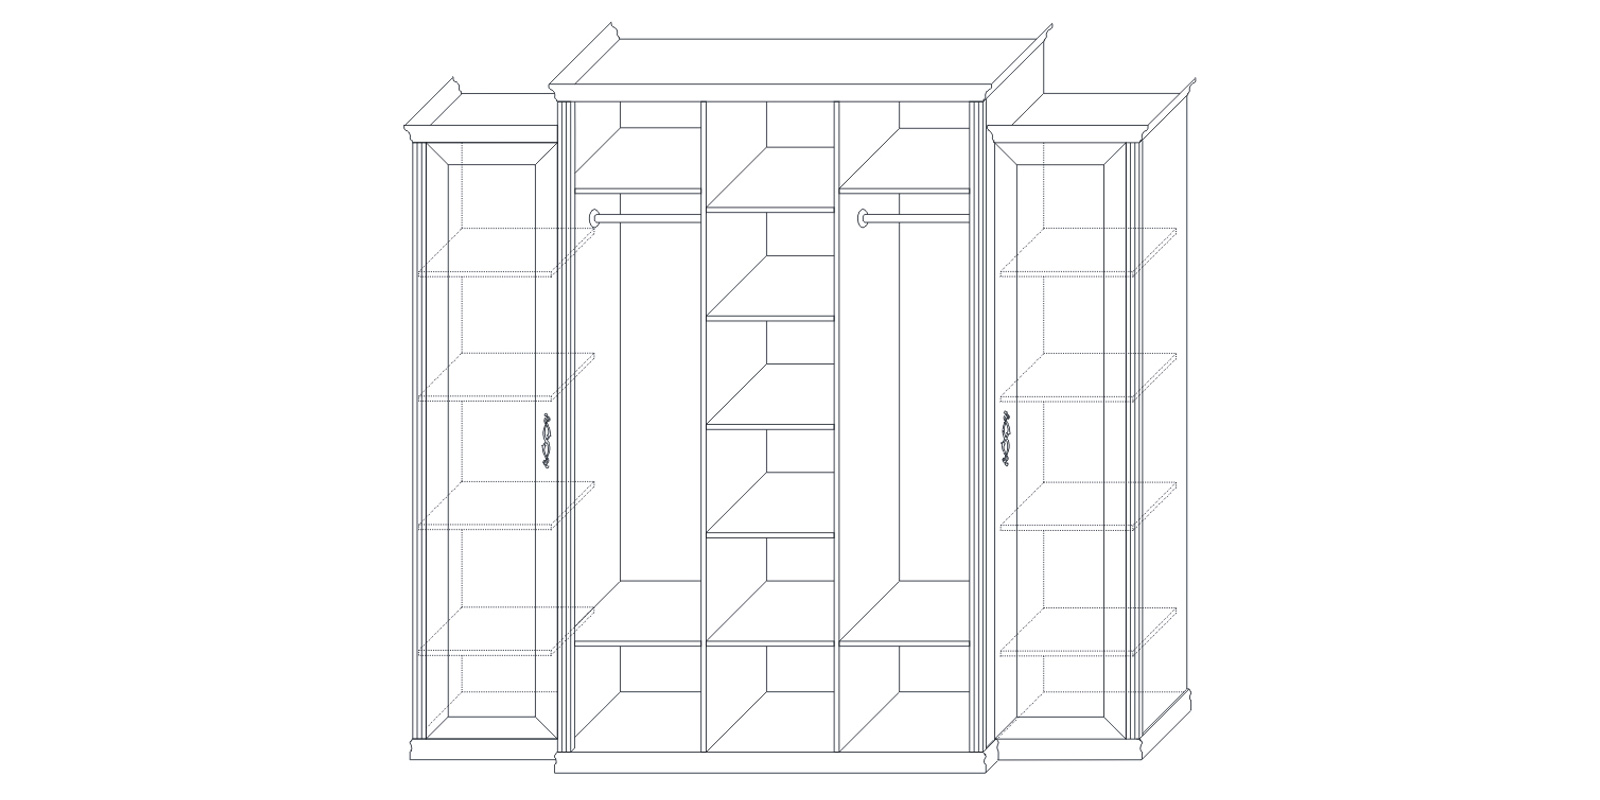 Шкаф пятидверный (корпус, малые боковые двери в комплекте) «Венето» Кураж